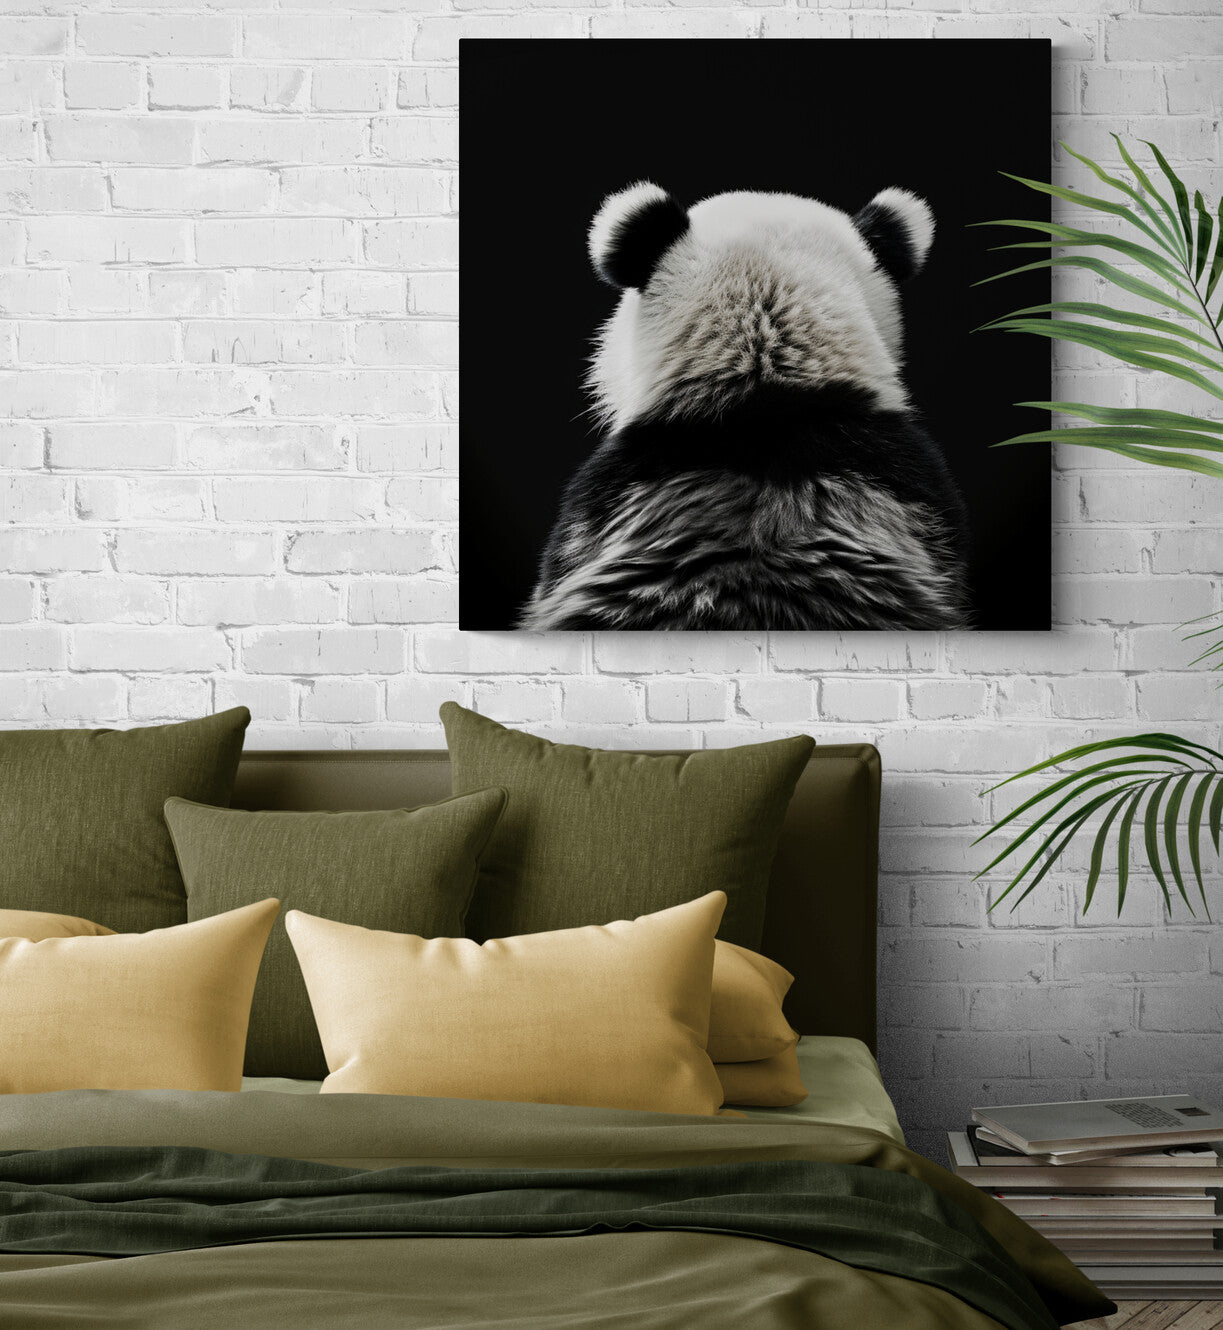  chambre adulte moderne sublimé par une œuvre de panda, synonyme de détente